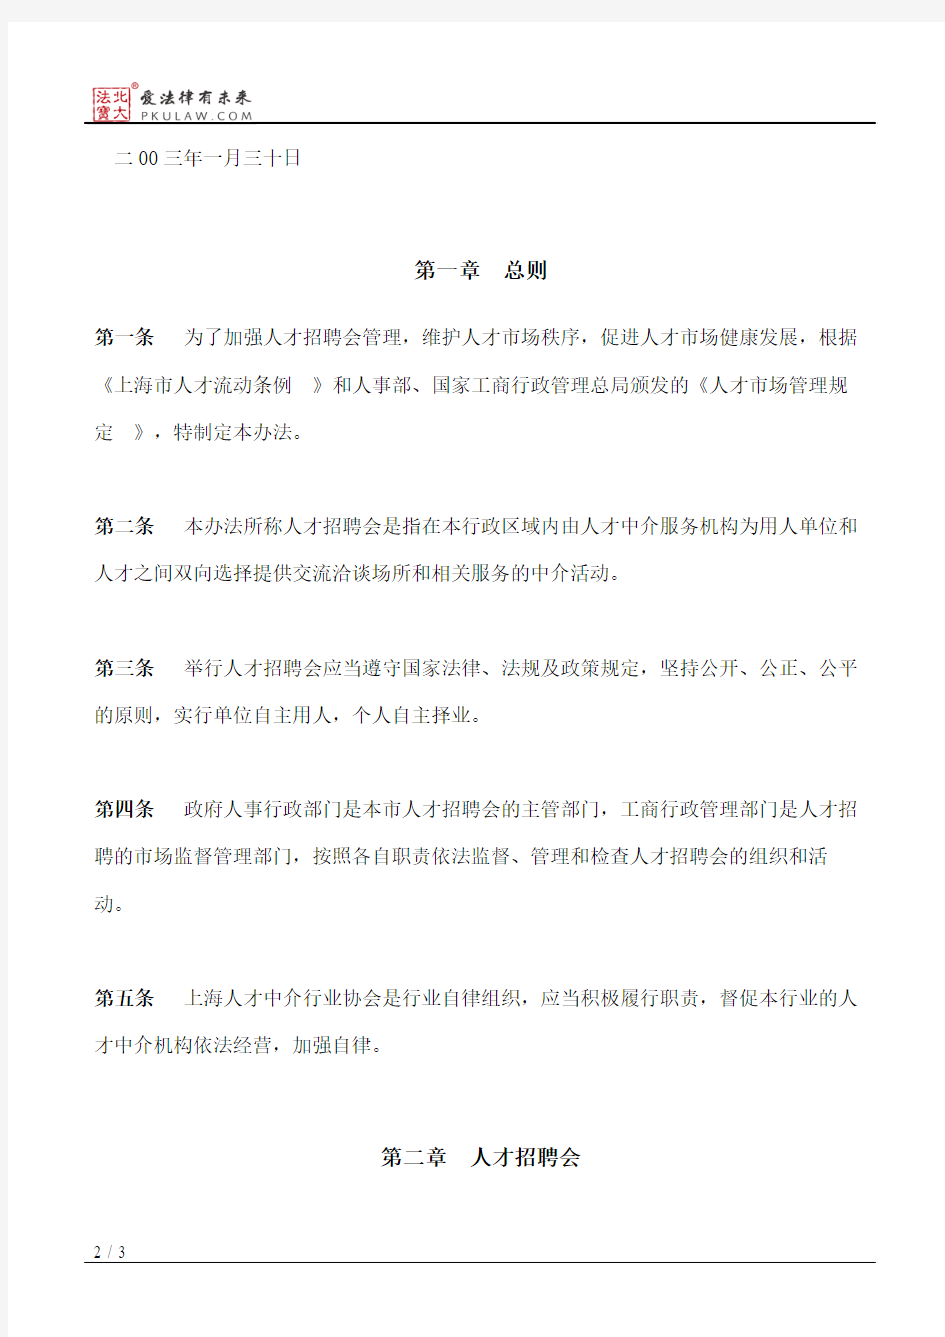 上海市人事局关于印发《上海市人才招聘会管理试行办法》的通知